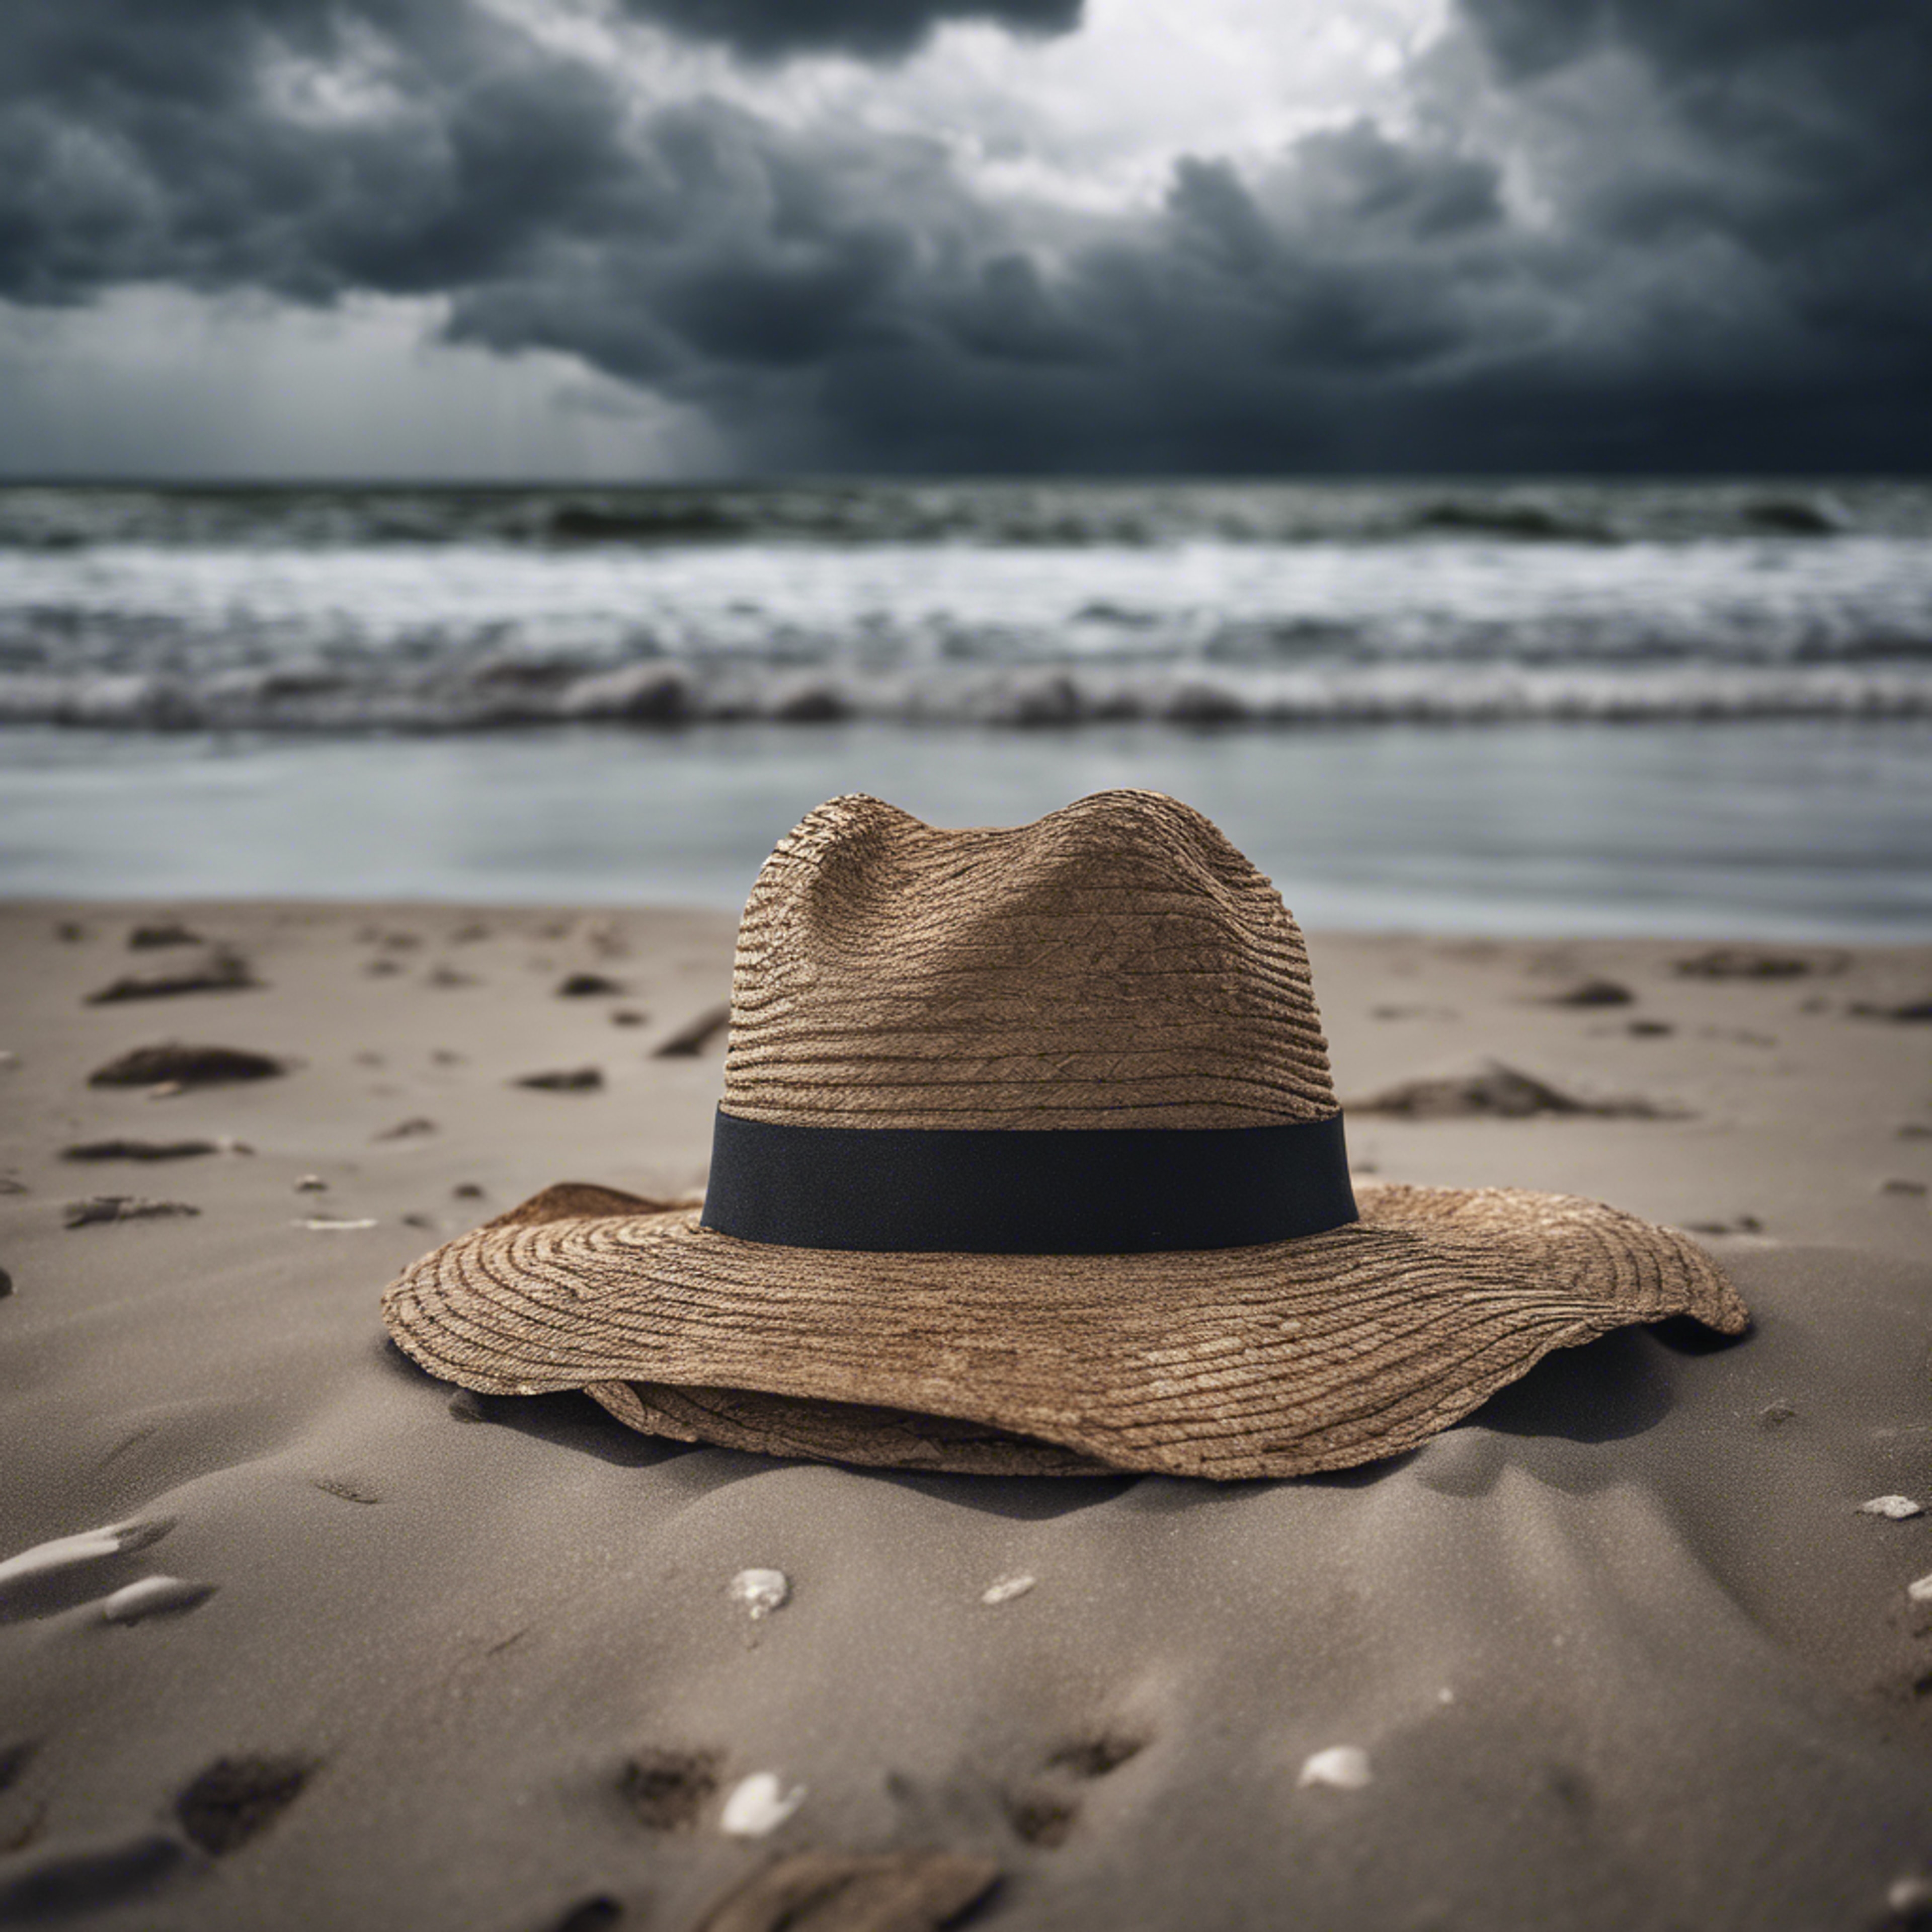 A single, forsaken hat blowing across a desolate beach under a stormy sky. Wallpaper[22c522374a7d402da3d5]